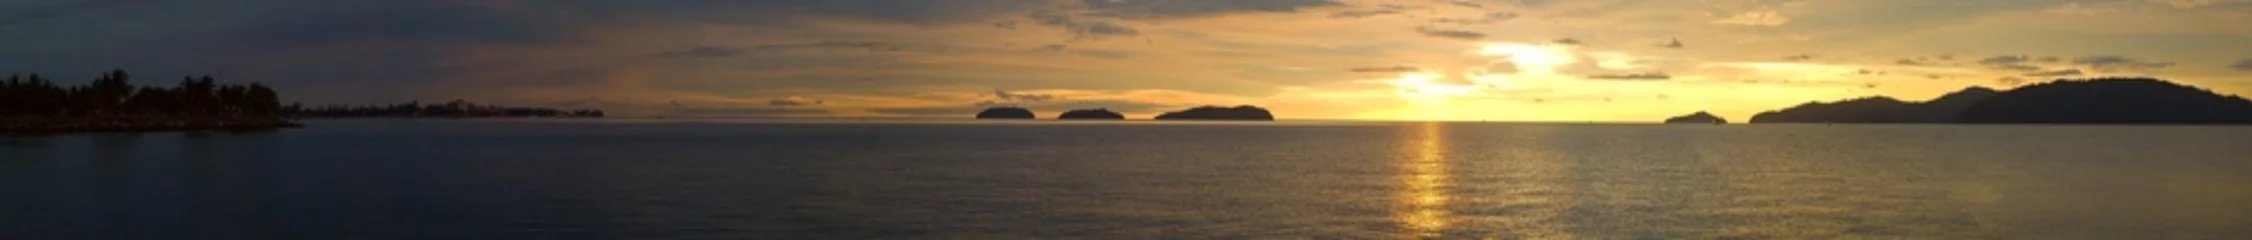 Selbstklebende Fototapete Meer / Ozean Ein ultraweiter Panoramablick auf einen goldenen Sonnenuntergangsozean